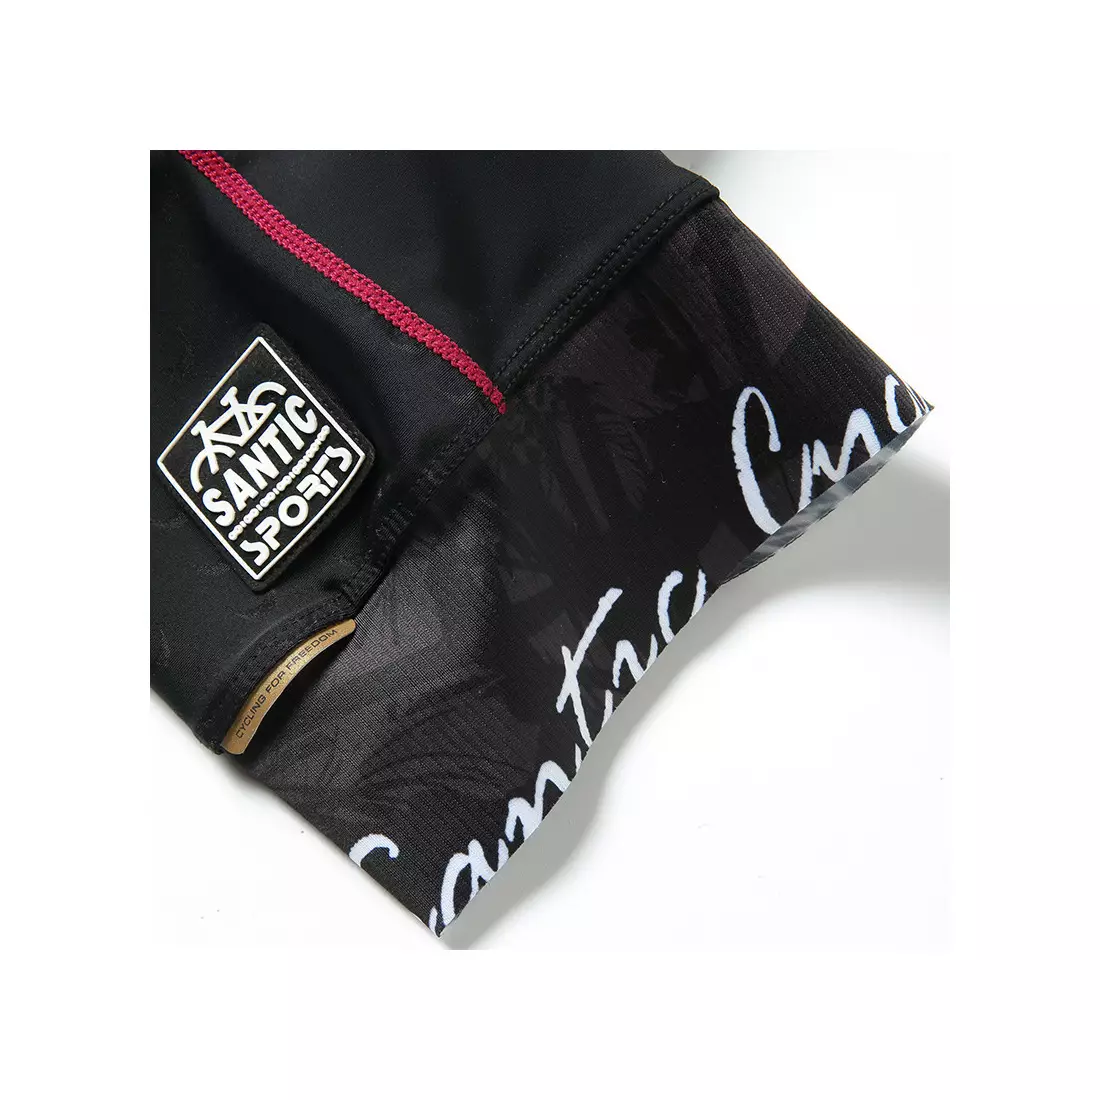 Dámske šortky s náprsenkou SANTIC, čierno-ružové L8C05096